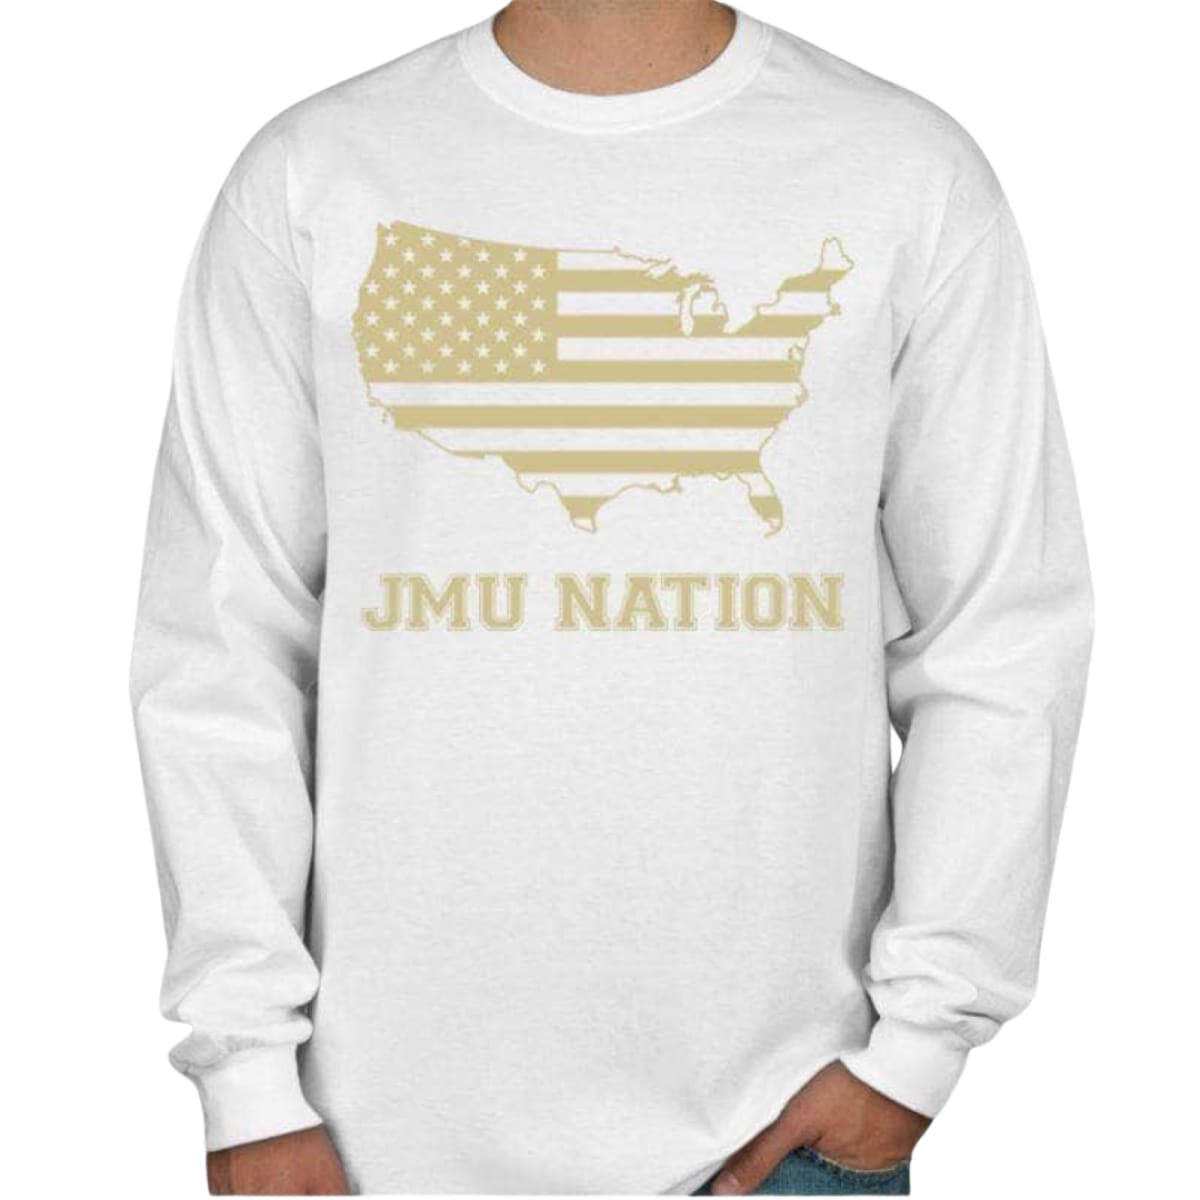 JMU Nation Men’s/Unisex Long Sleeve T-Shirt - S / WHITE